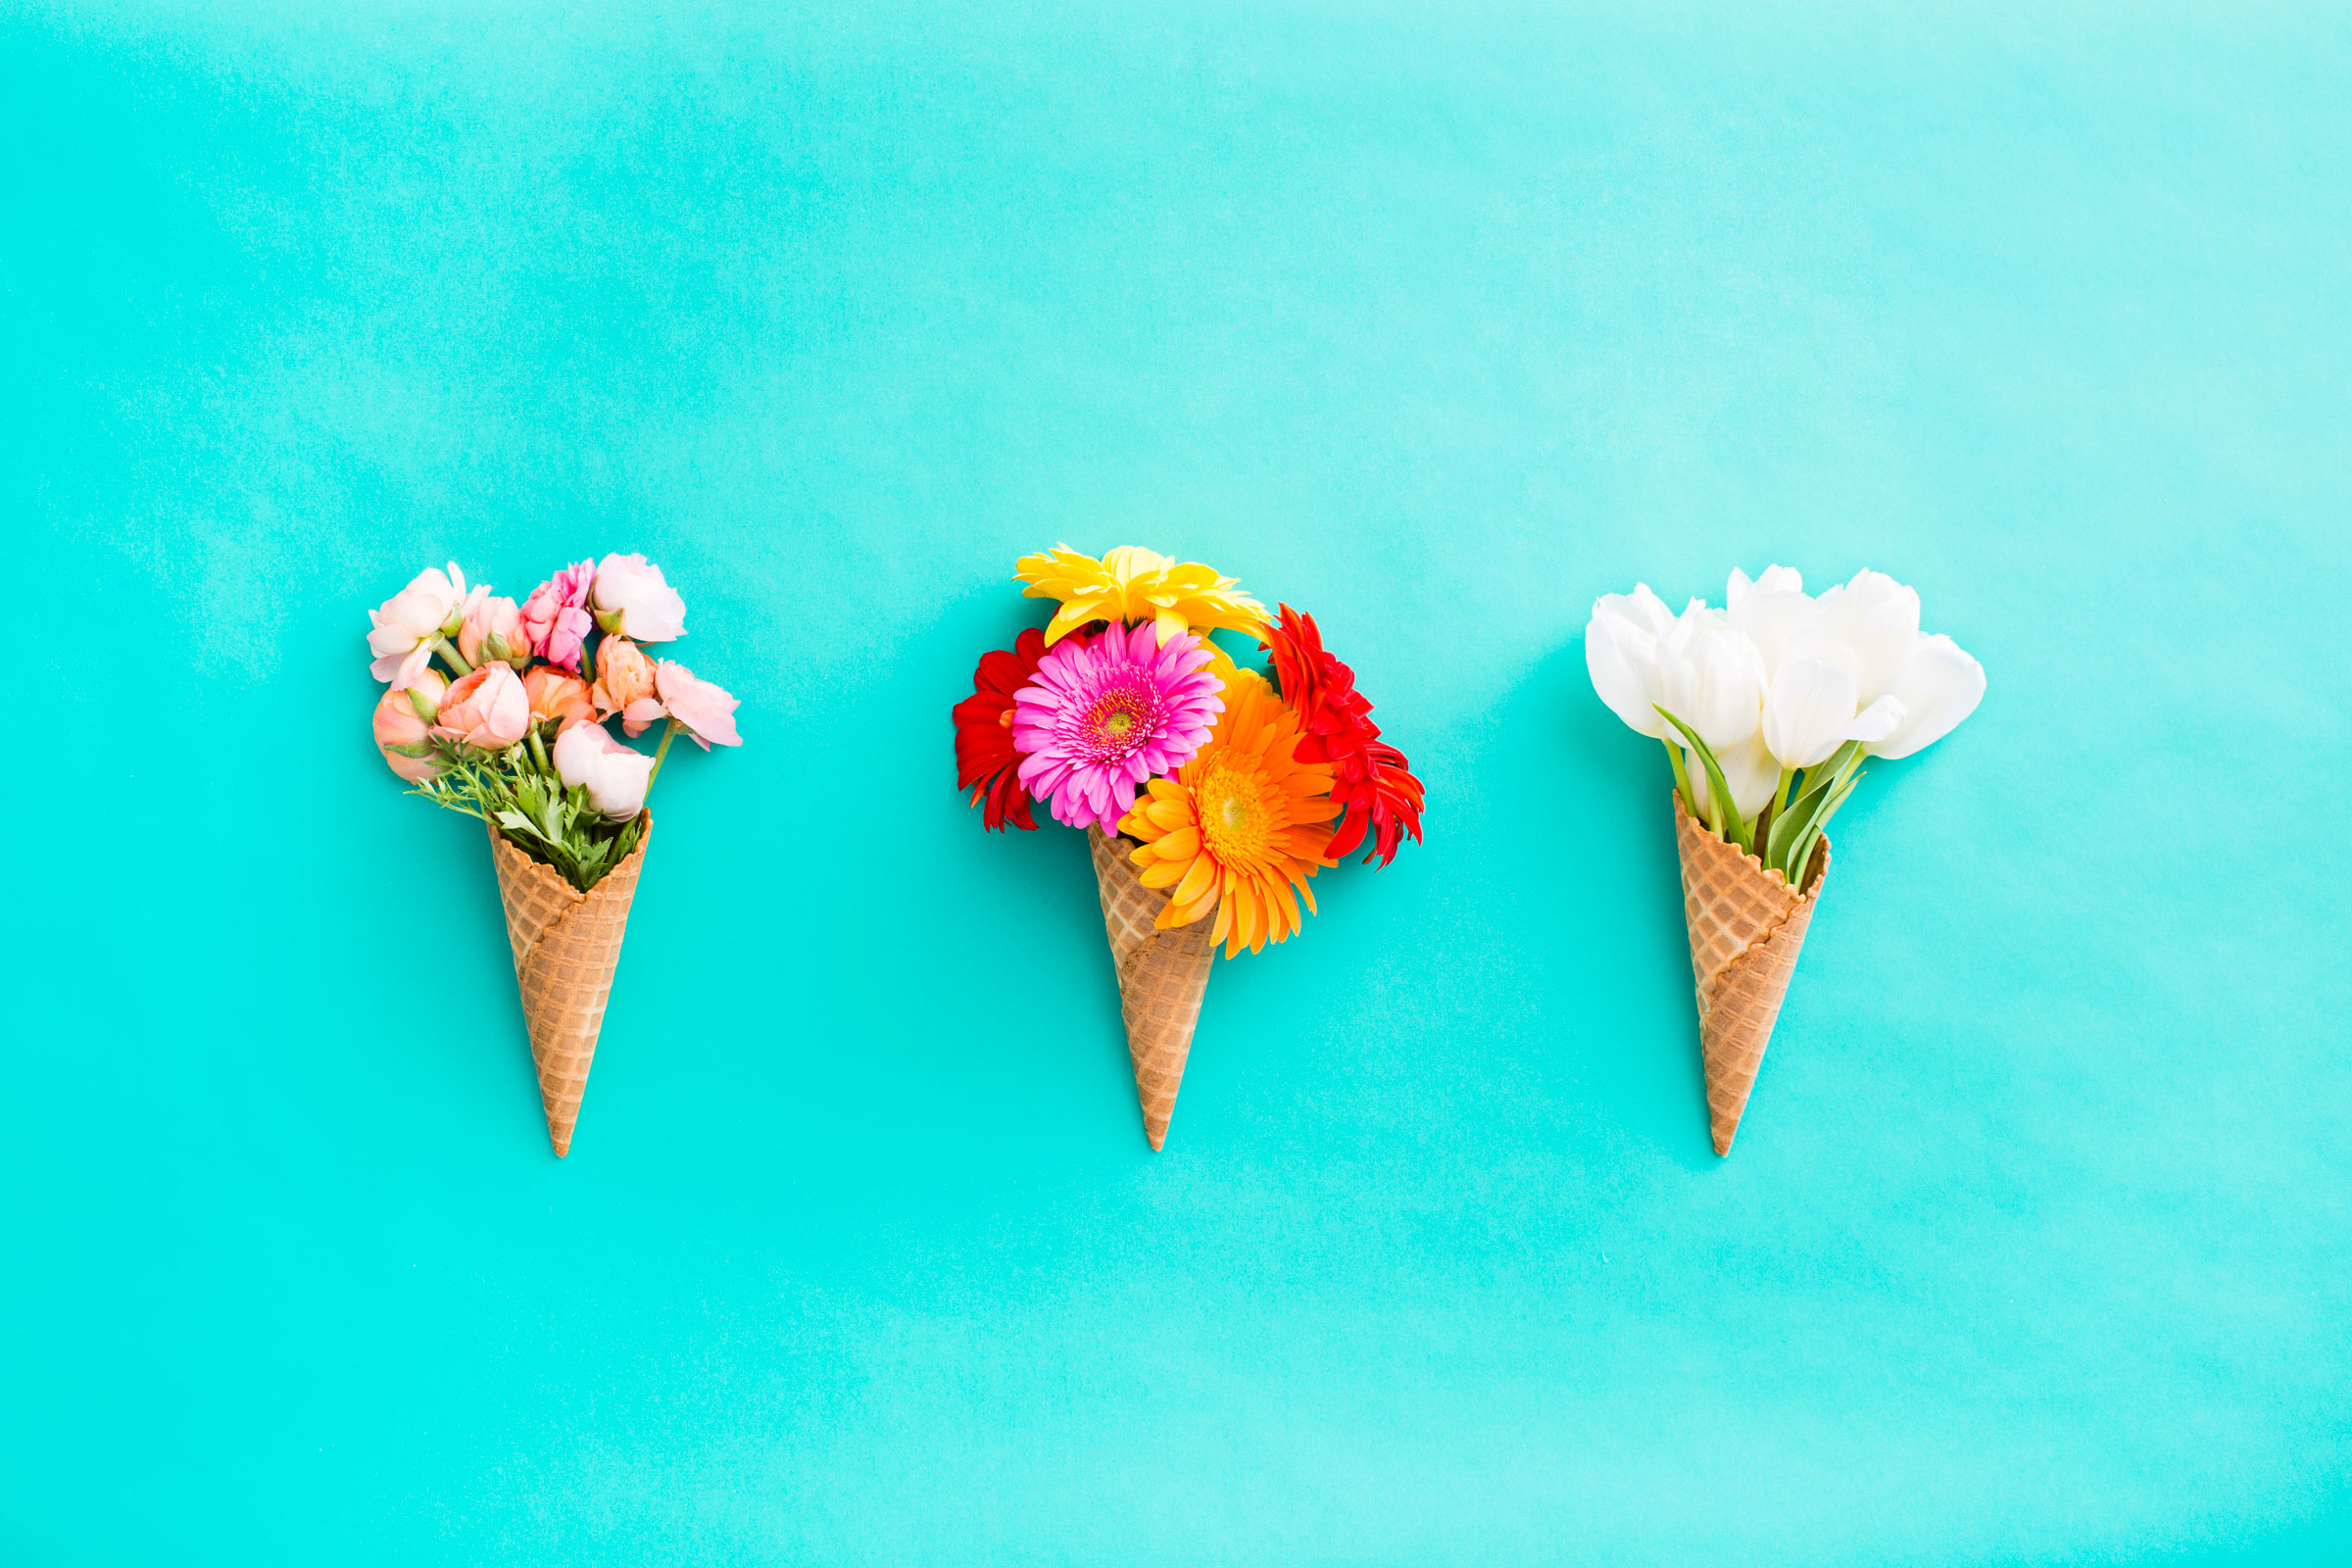 cream flower wallpaper,ice cream cone,frozen dessert,ice cream,dessert,food